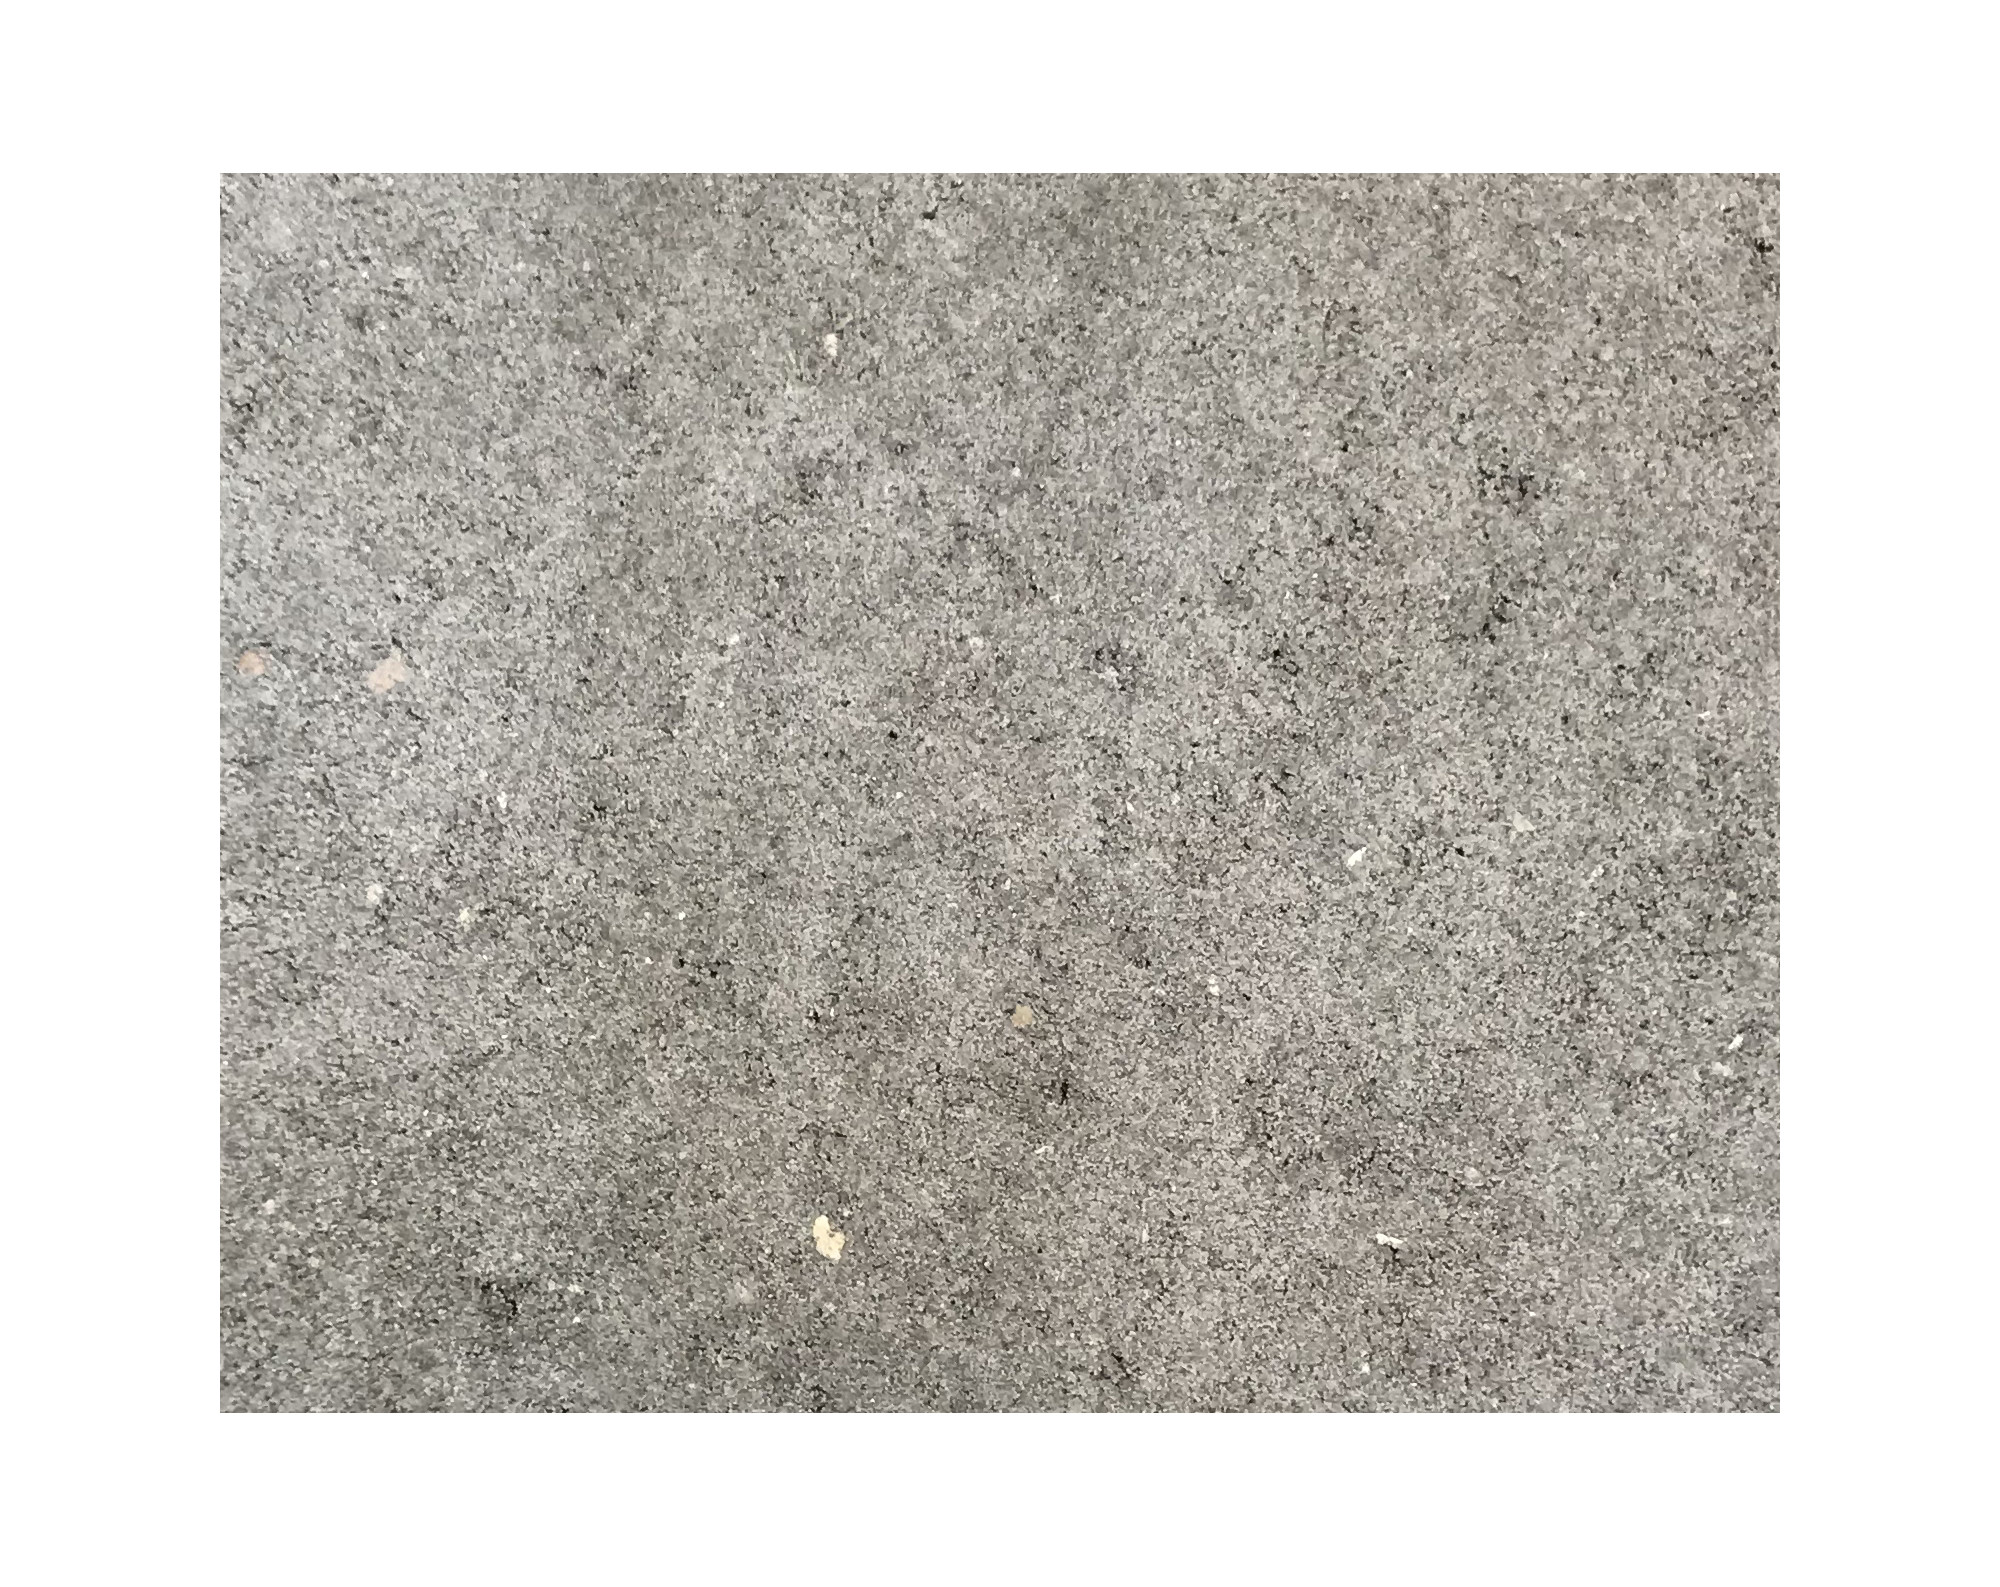 Harmo roc athenset, rustica-serie, ovaal d: 5,00mx10,30, grijs , beton